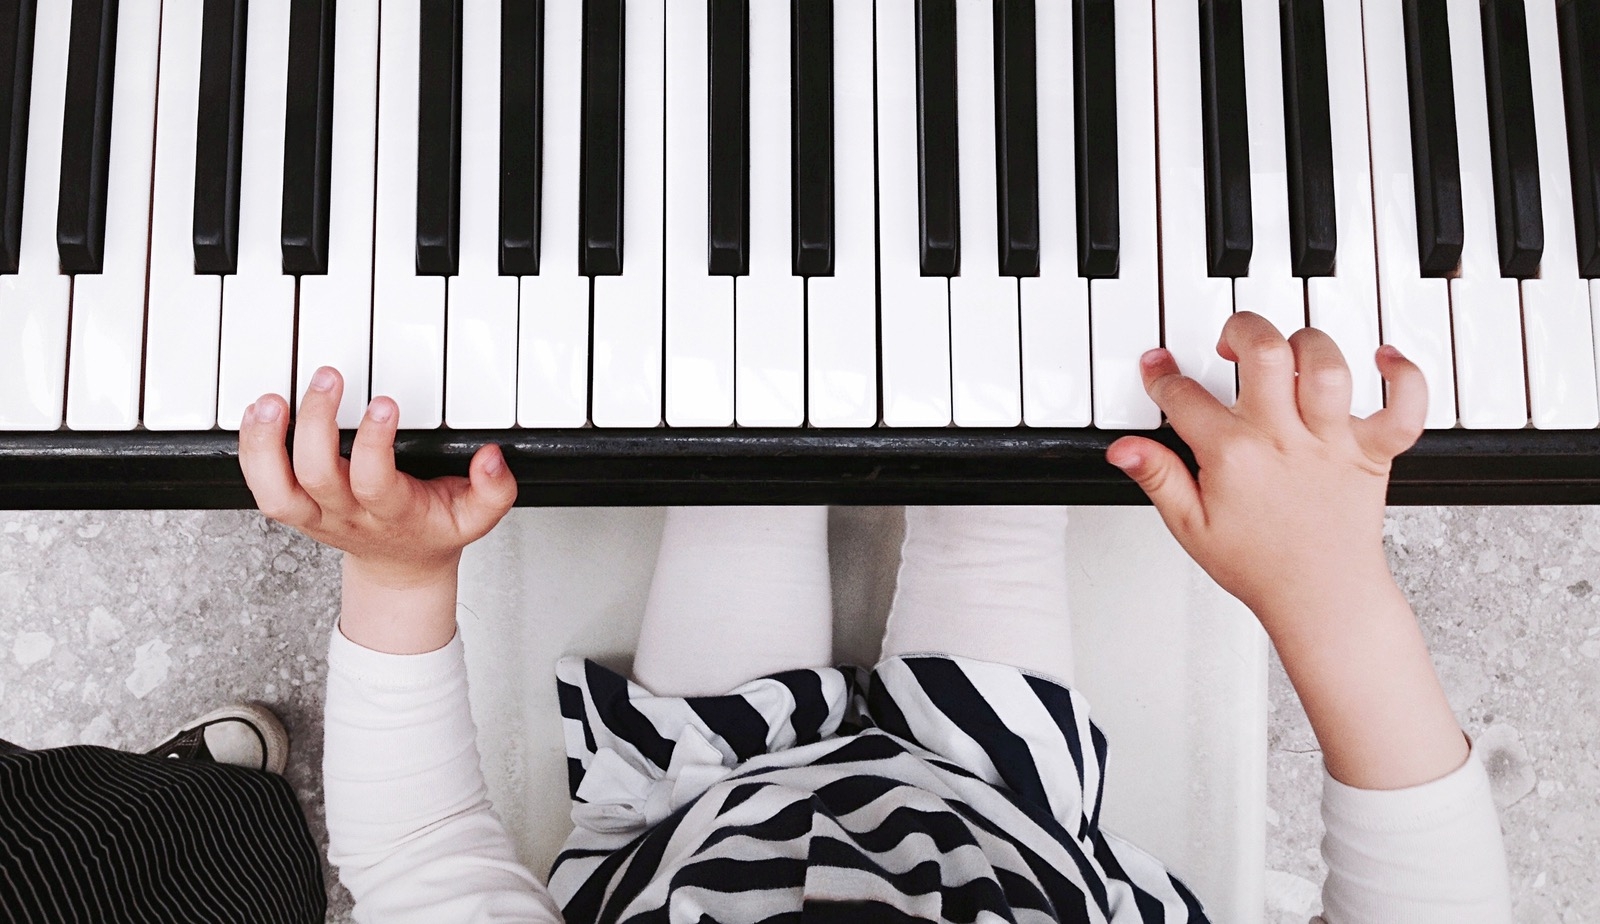 Исполнение любимых песен ребенка на фортепиано может увлечь его игрой на инструменте